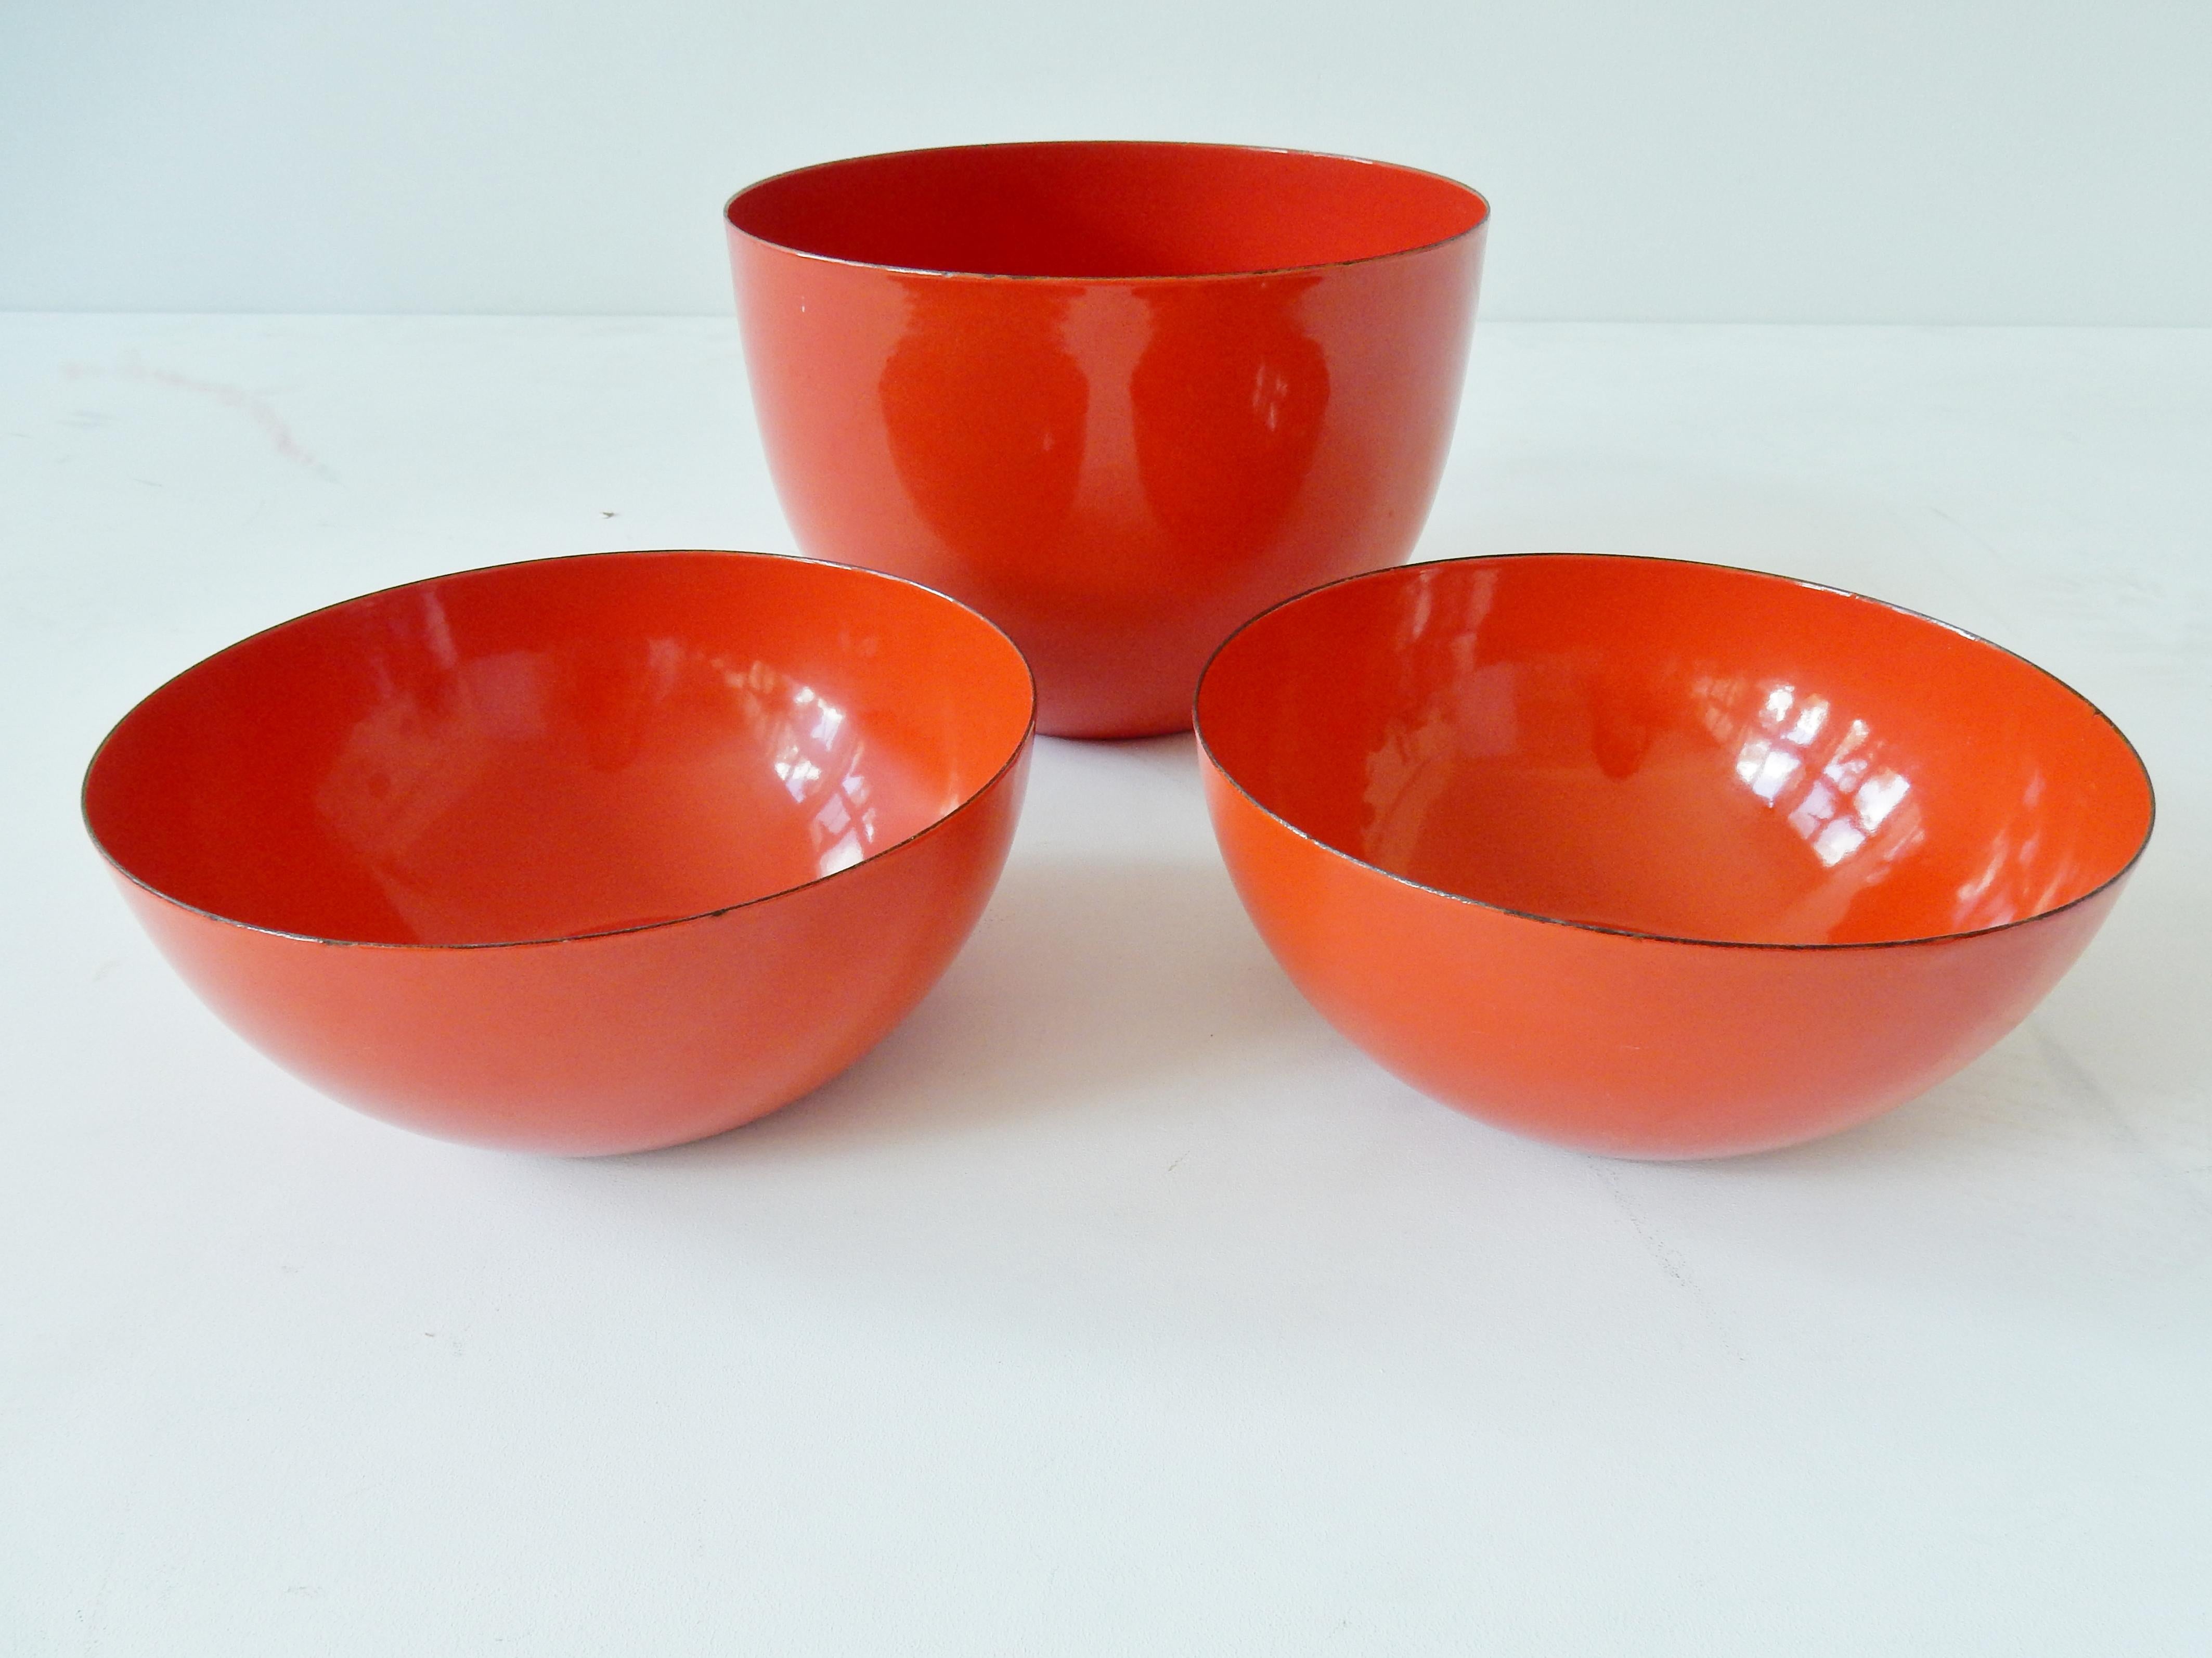 Un très bel ensemble de trois bols émaillés rouge-orange réalisés par Kaj Franck pour Finel, fabriqués en Finlande dans les années 1960. Ces bols sont en très bon état avec quelques signes d'âge et d'utilisation. Les bols sont signés sur le